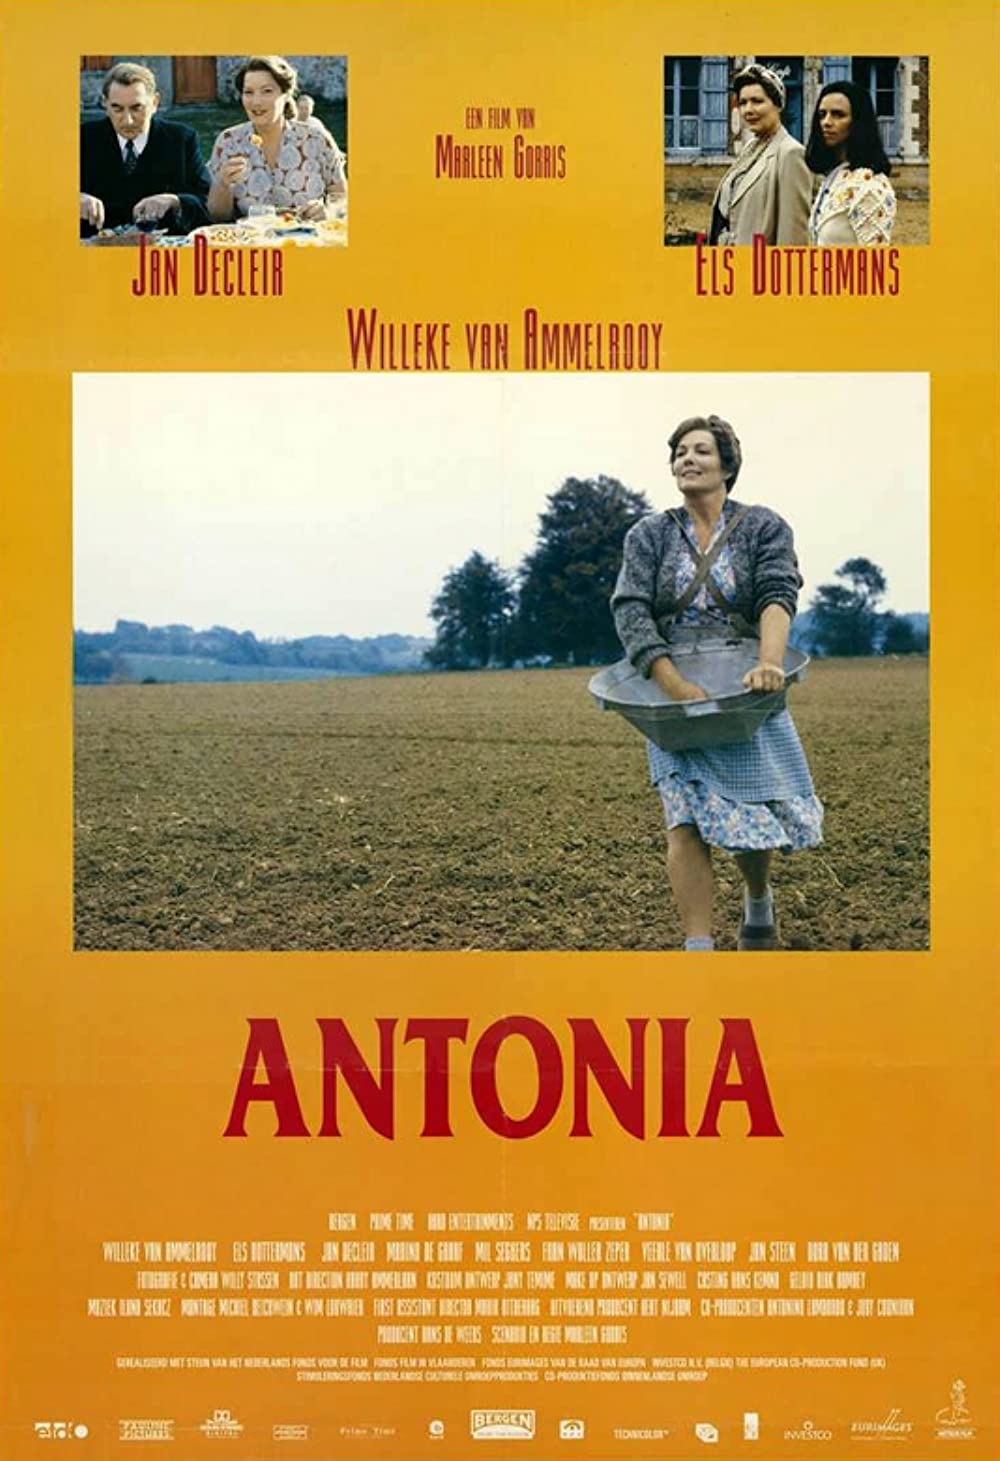 Antonias Welt